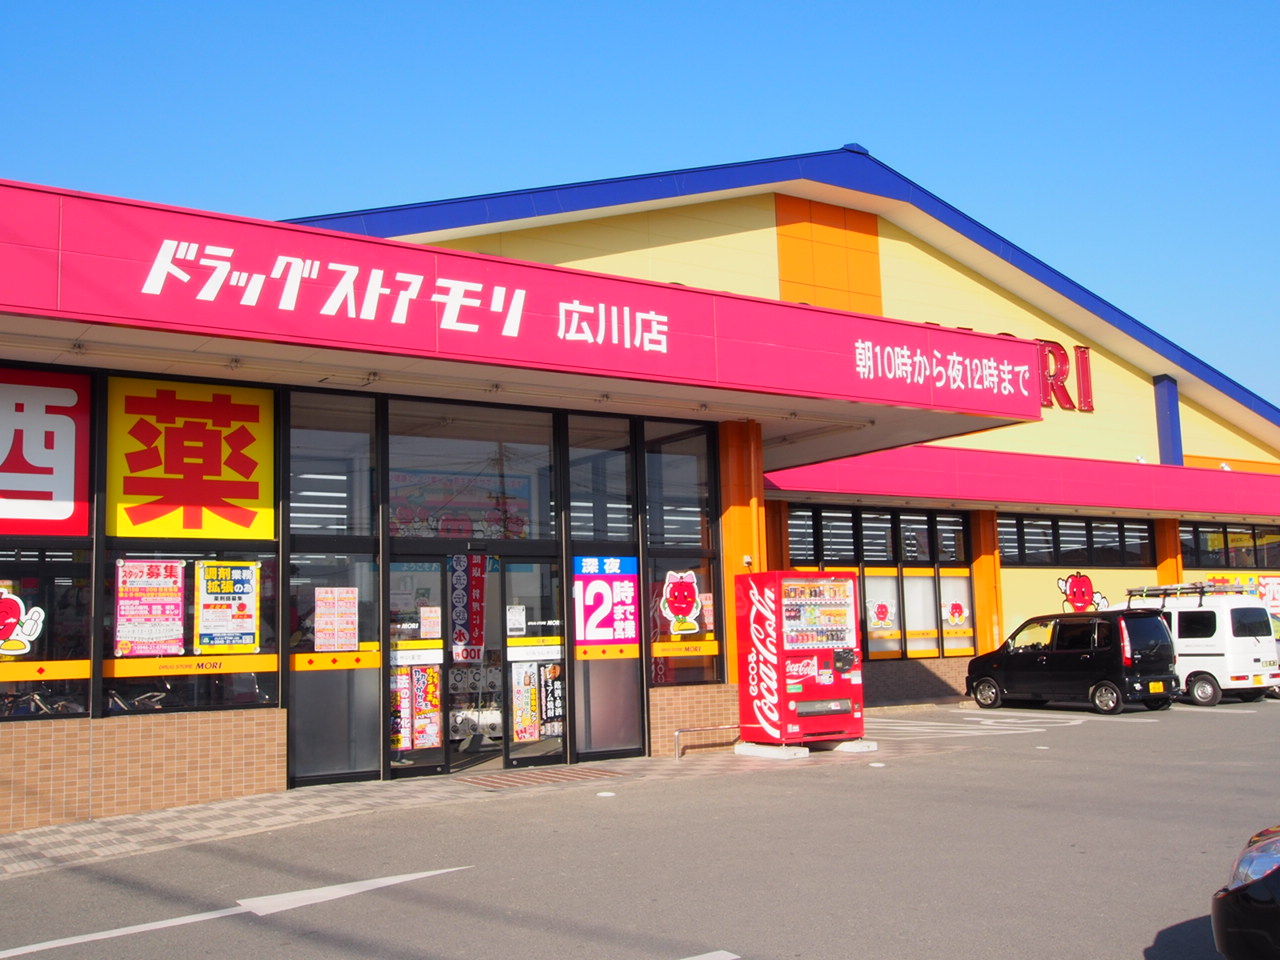 Dorakkusutoa. Drugstore Mori Hirokawa shop 3129m until (drugstore)